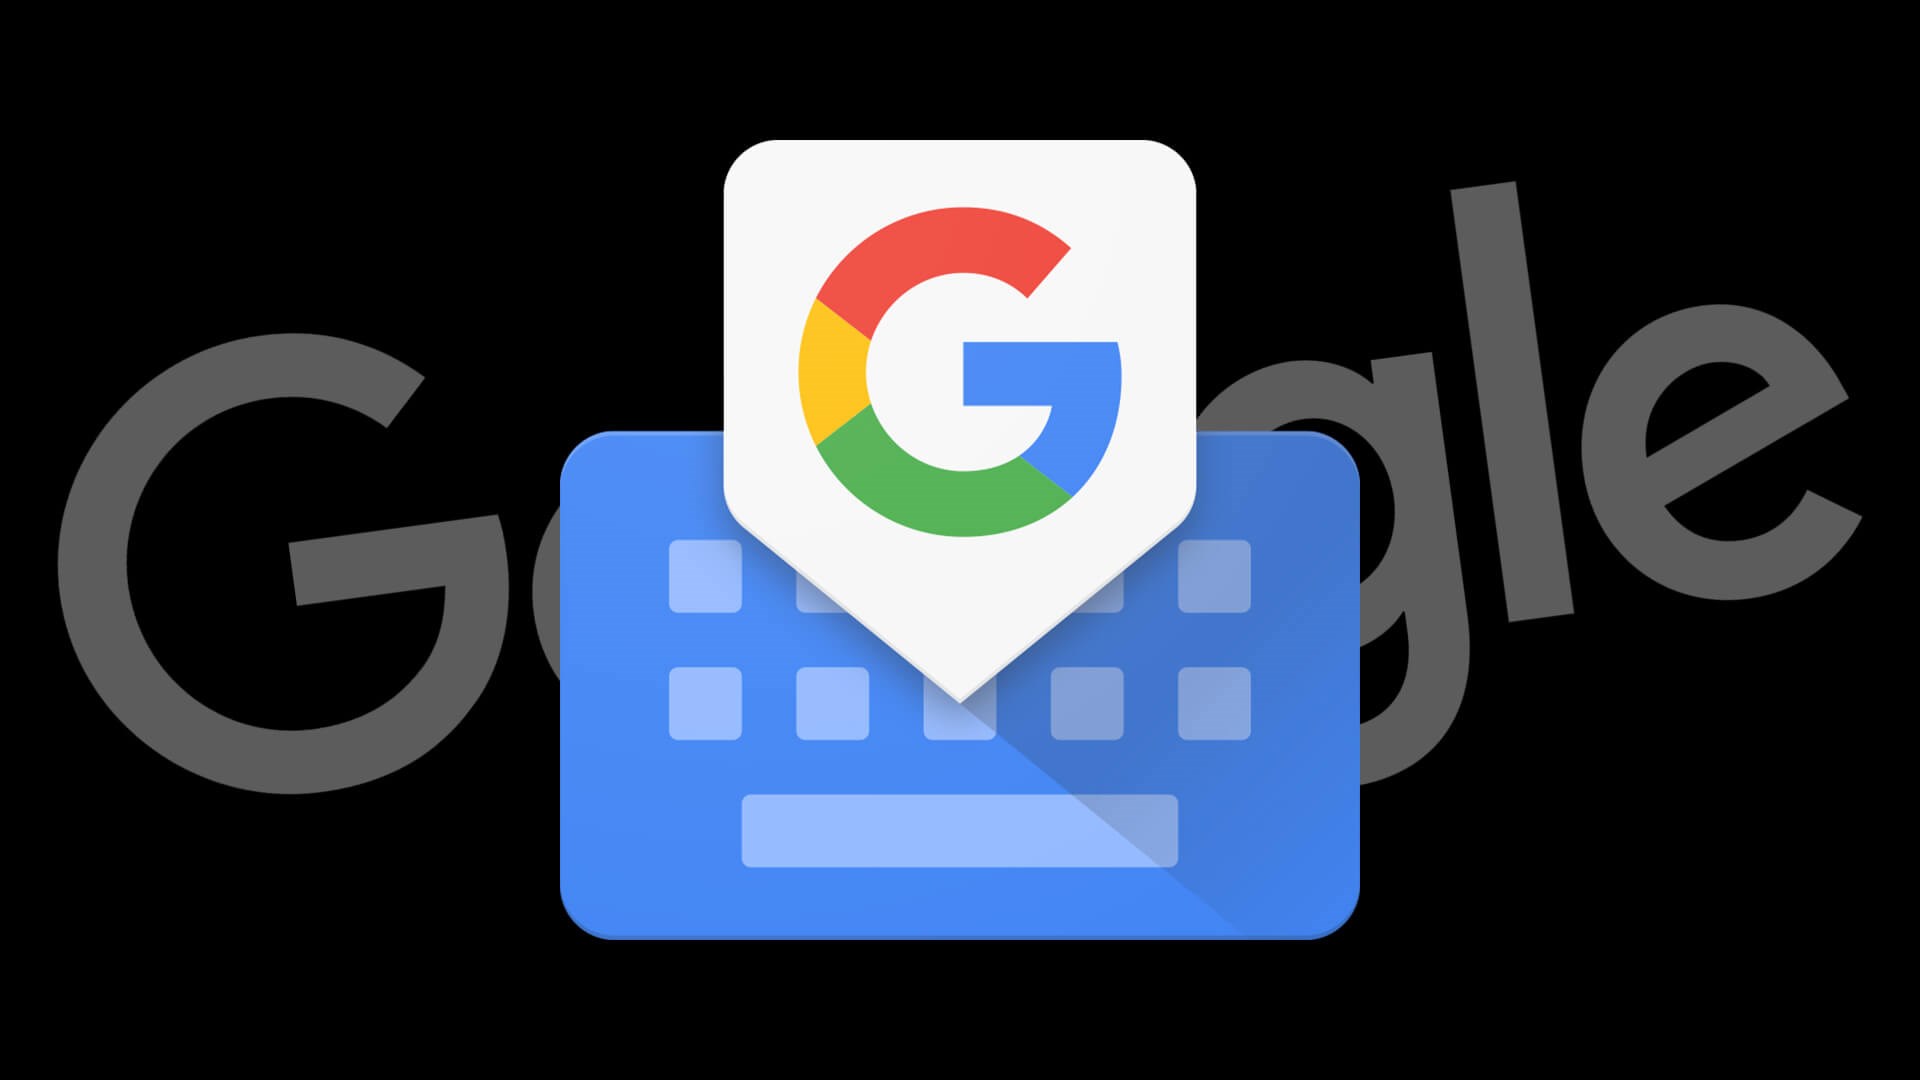 google gboard klavye geri al özelliği geliyor